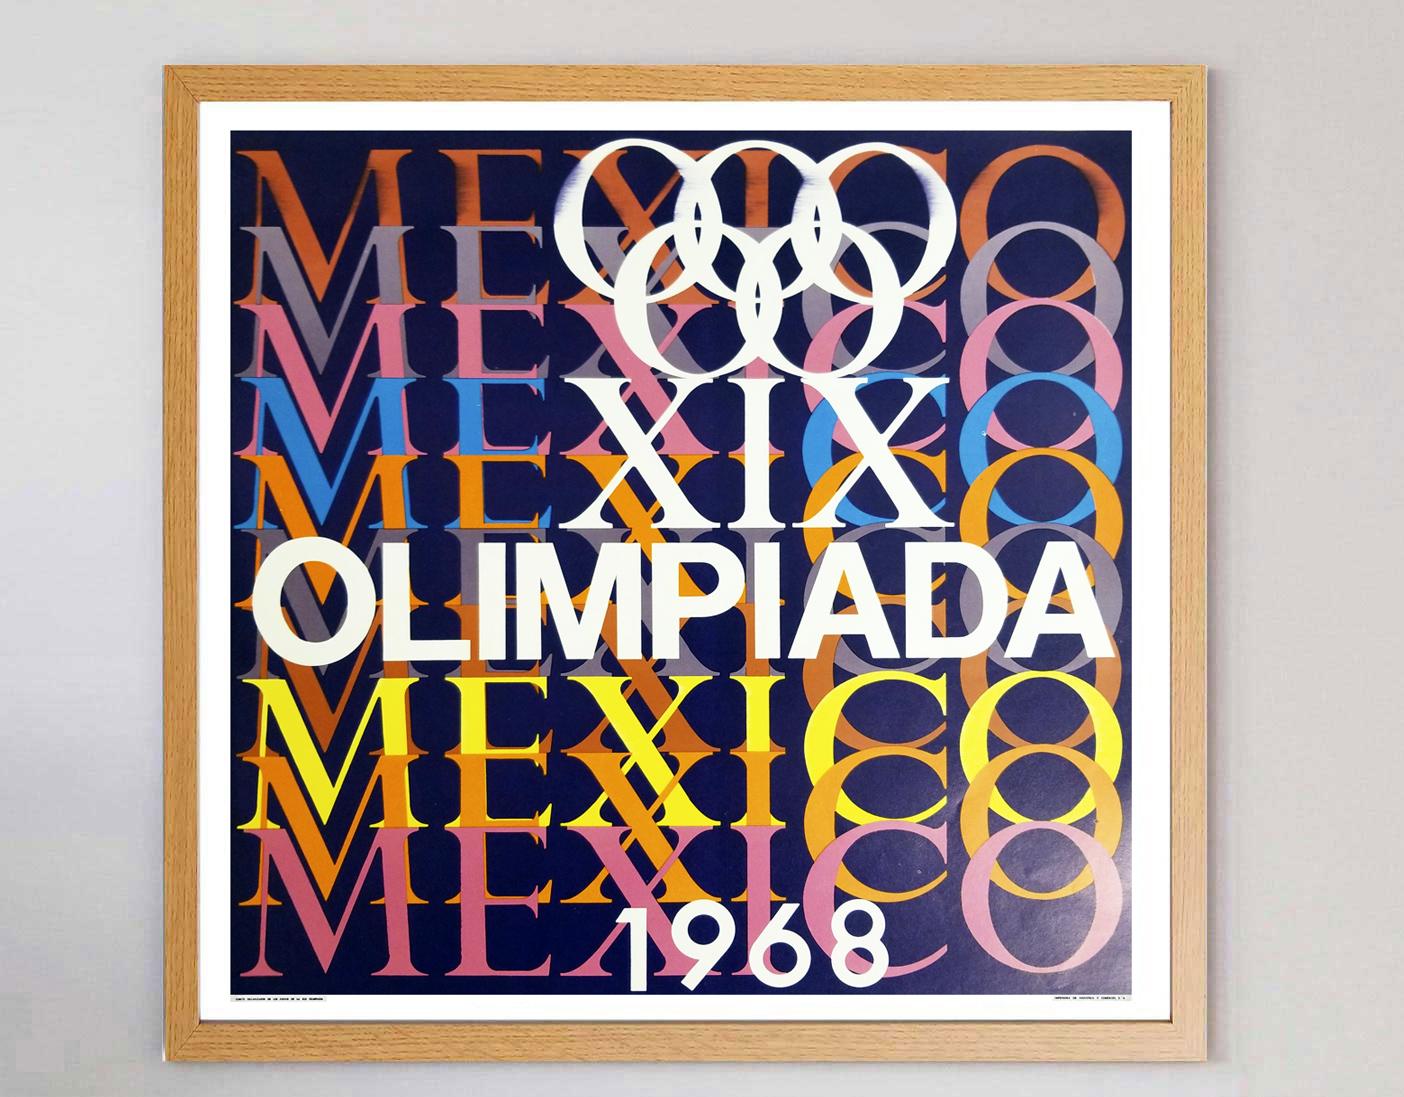 jo mexico 1968 affiche